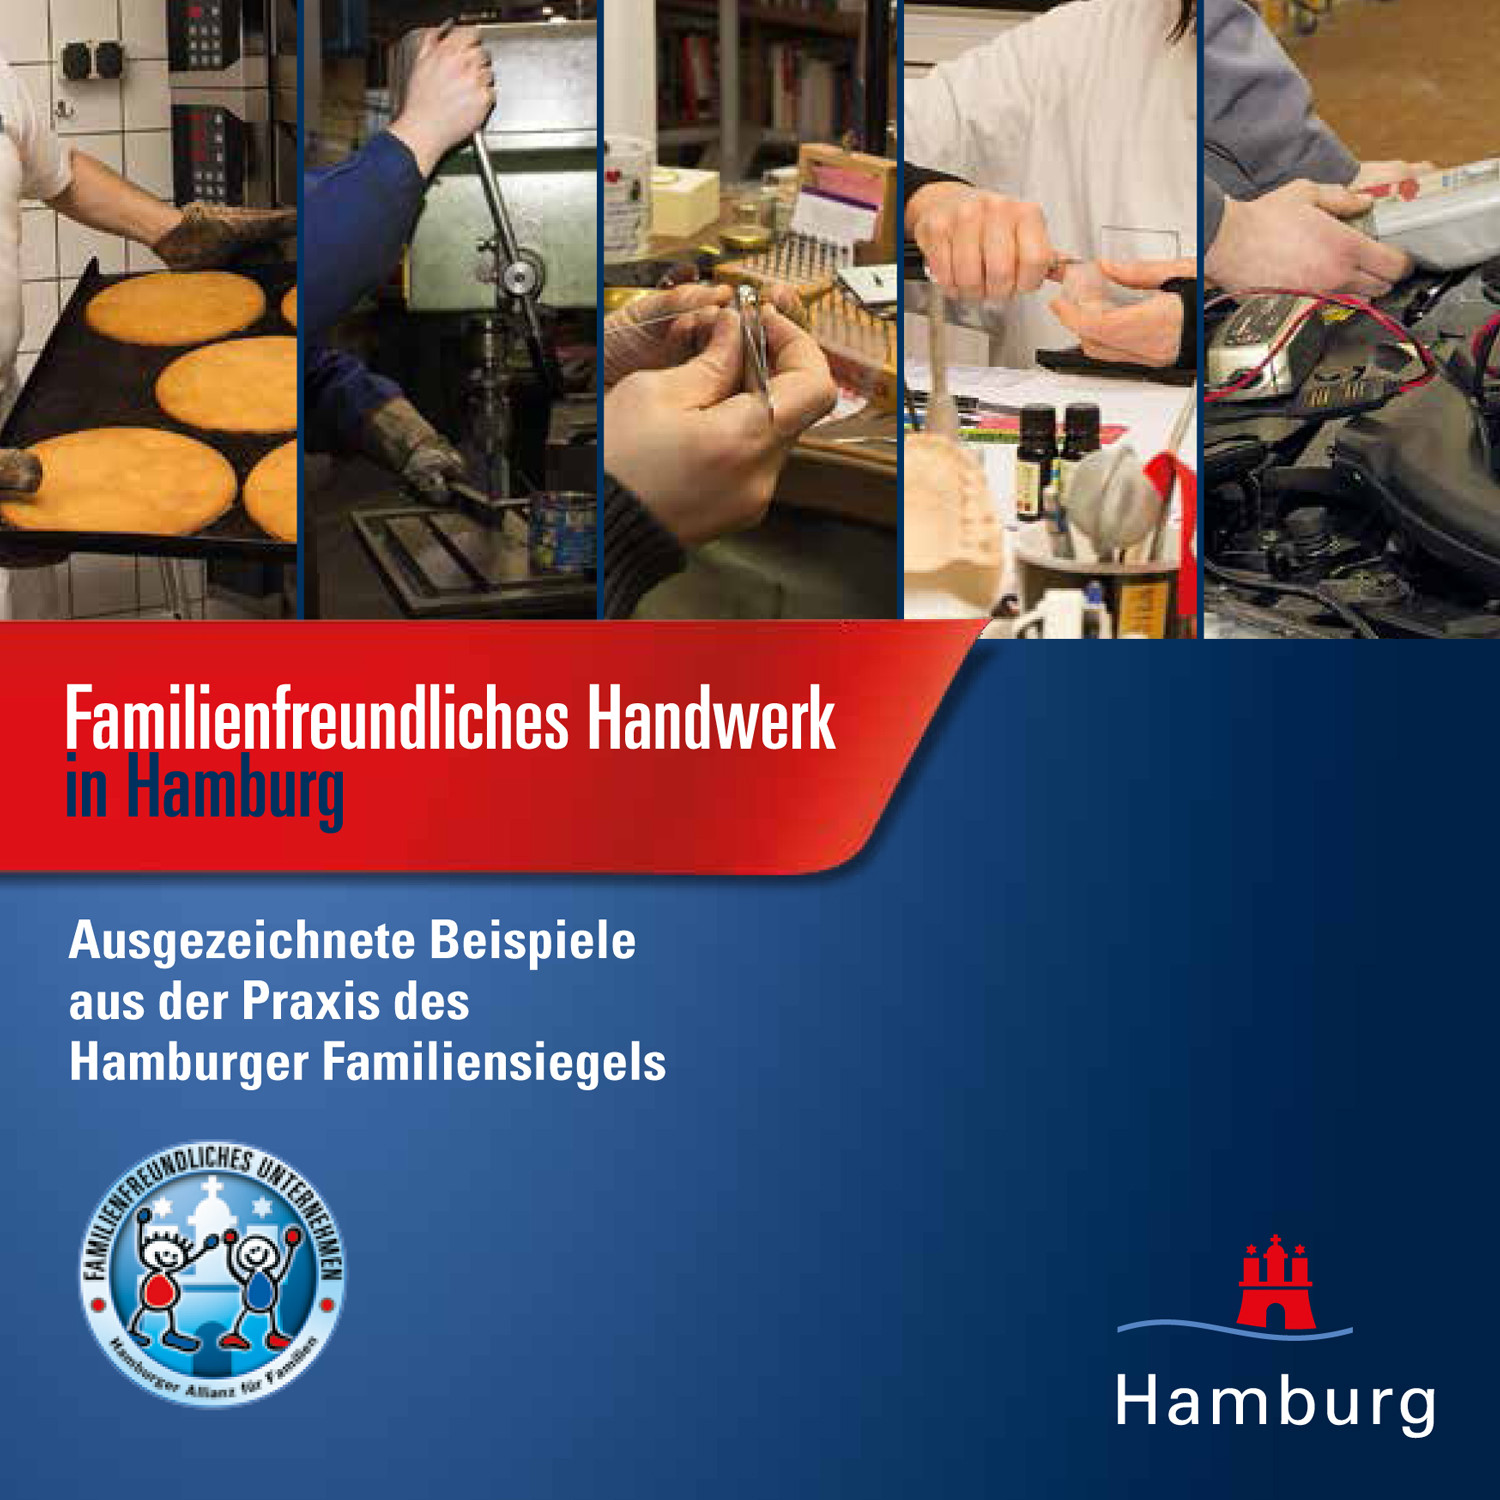 Handwerk Hamburg
 Familienfreundliches Handwerk Familiensiegel Hamburg